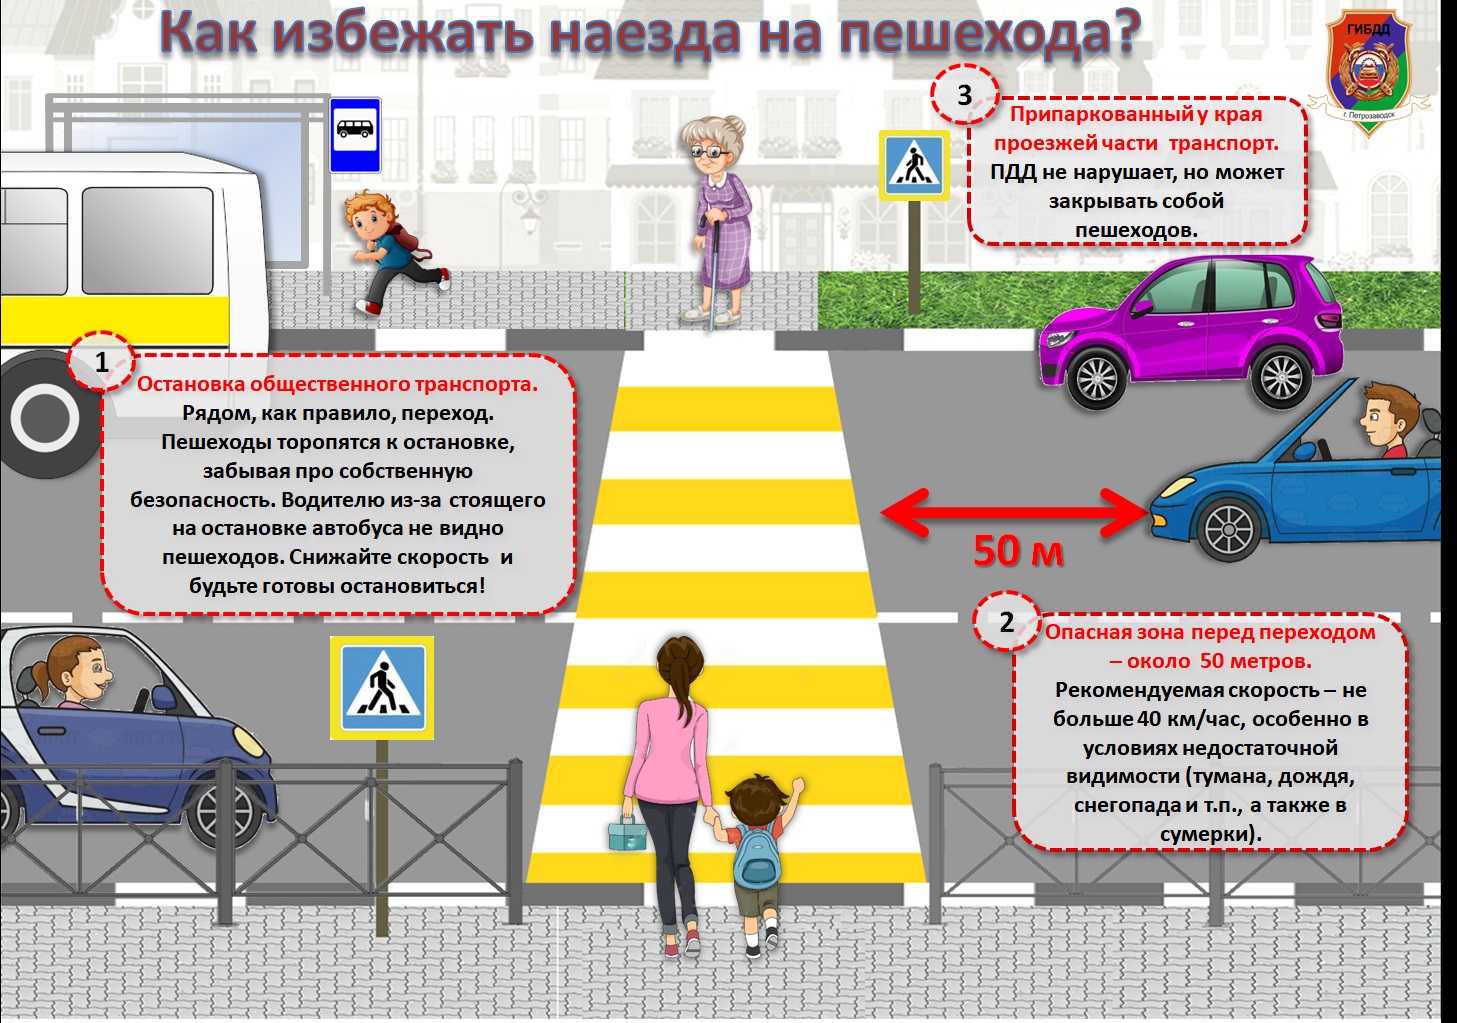 Правила дорожного движения для пешезодо